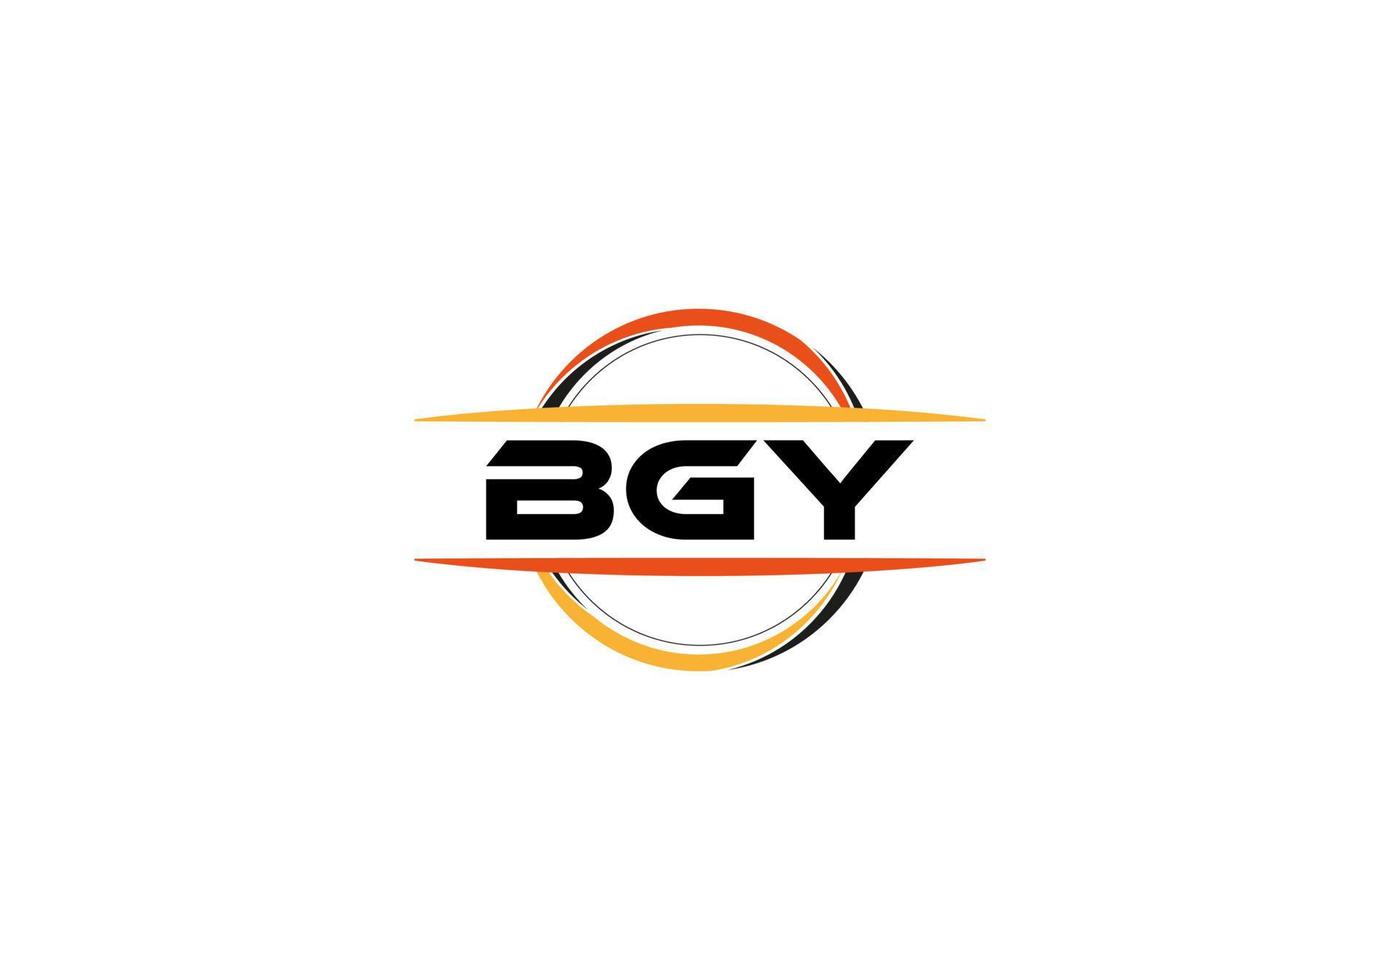 bgy carta realeza elipse forma logotipo. bgy escova arte logotipo. bgy logotipo para uma empresa, negócios, e comercial usar. vetor